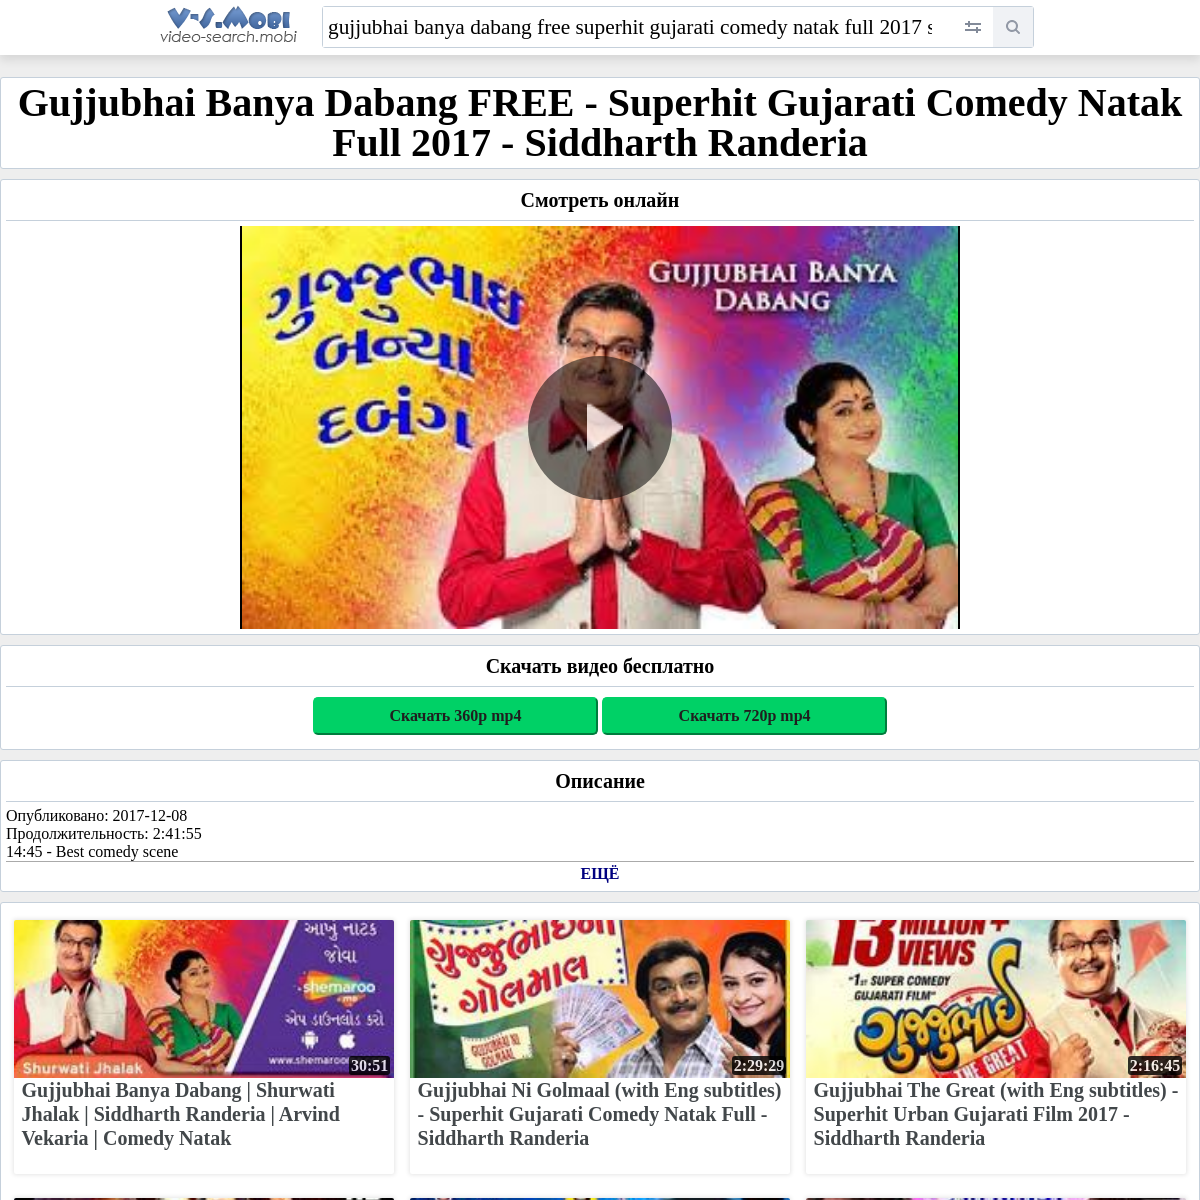 A complete backup of https://v-s.mobi/gujjubhai-banya-dabang-free-superhit-gujarati-comedy-natak-full-2017-siddharth-randeria-2: